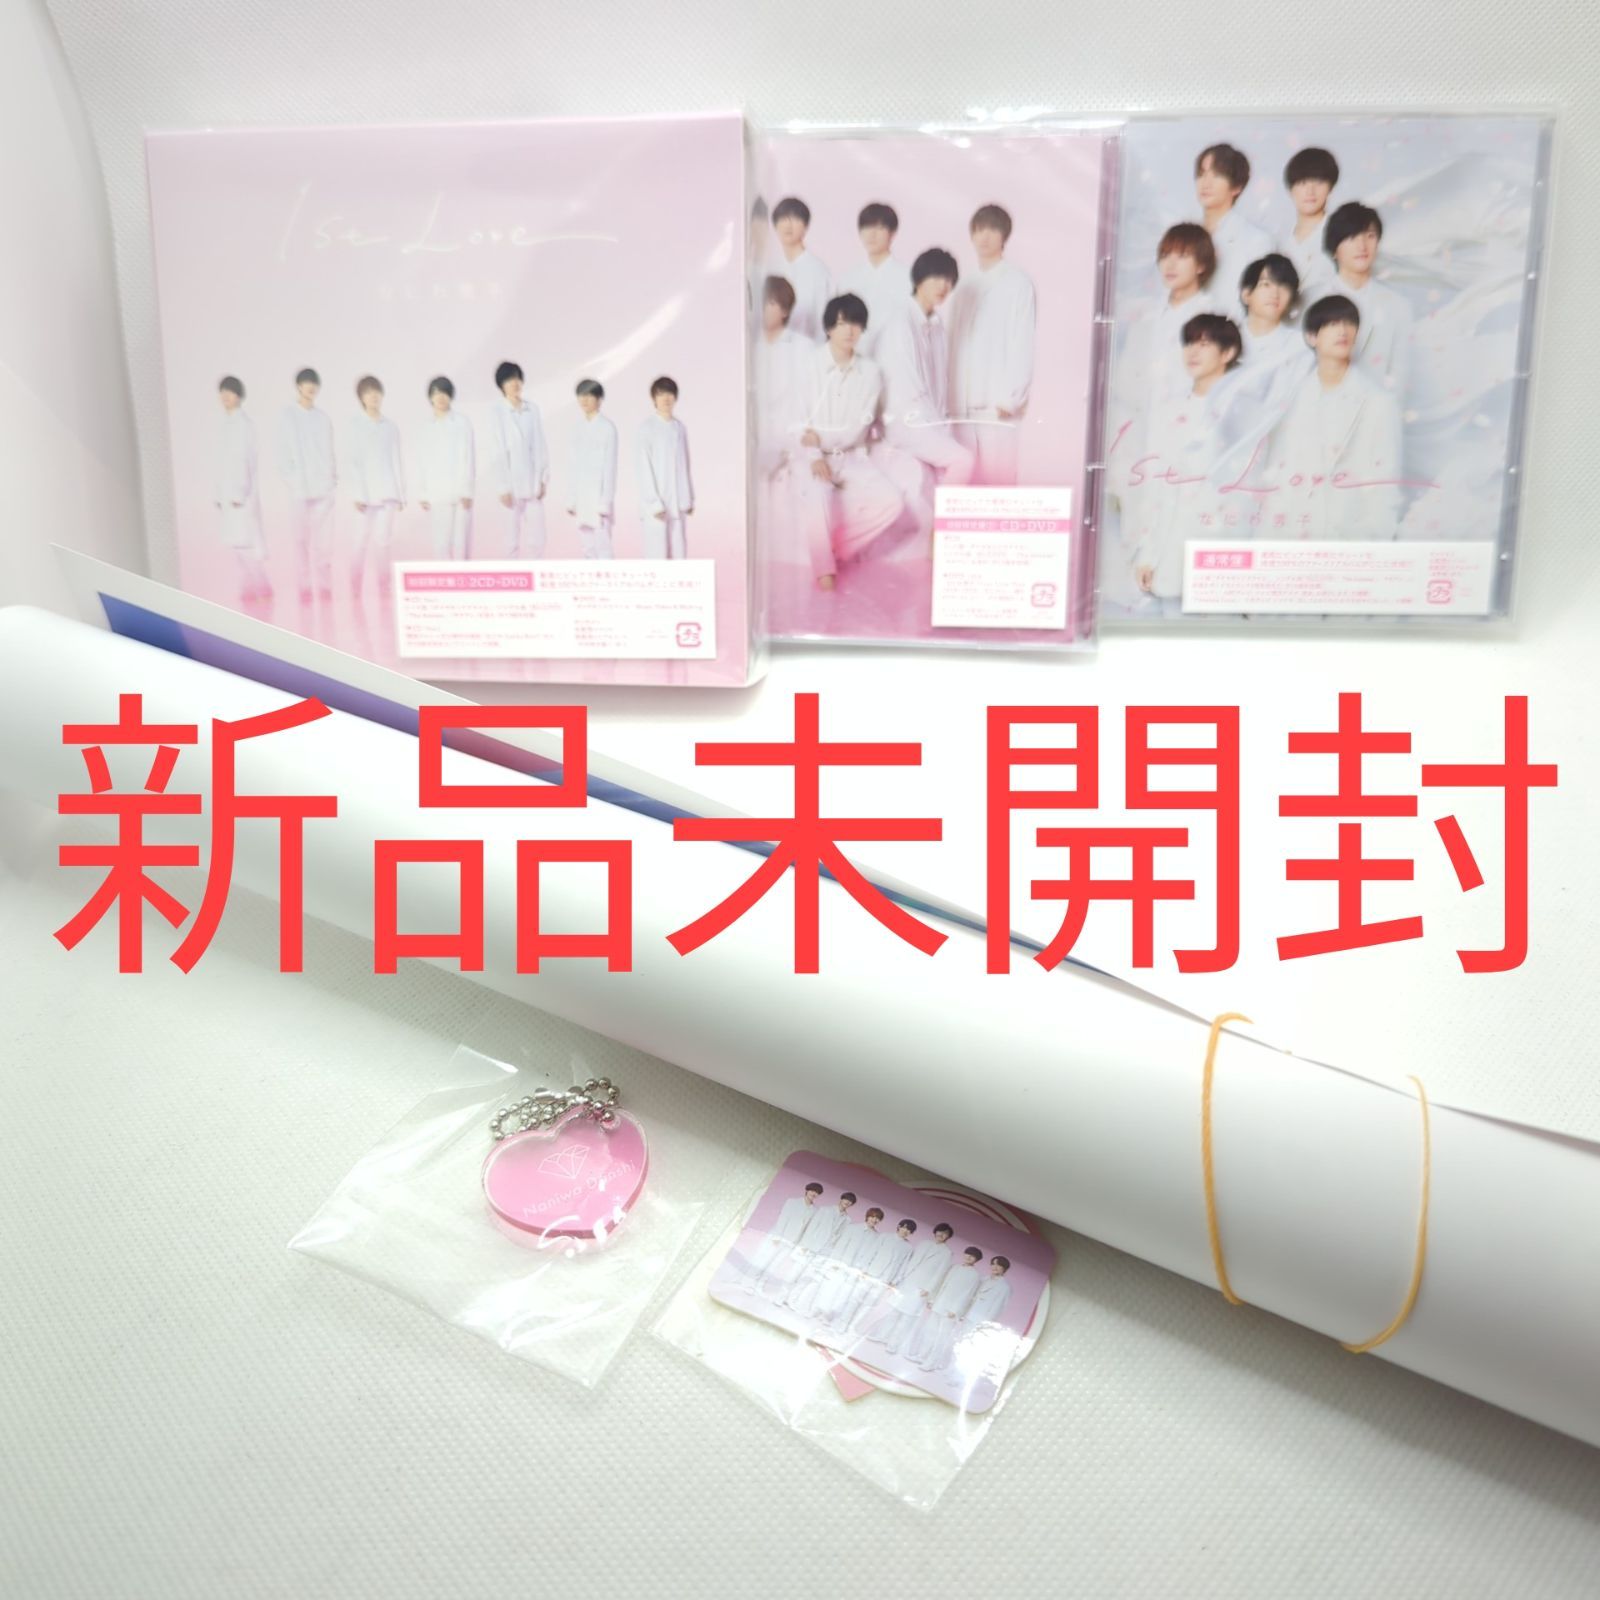 なにわ男子 1st Love CD&DVD 3形態セット 新品未使用 - セカンド オフ